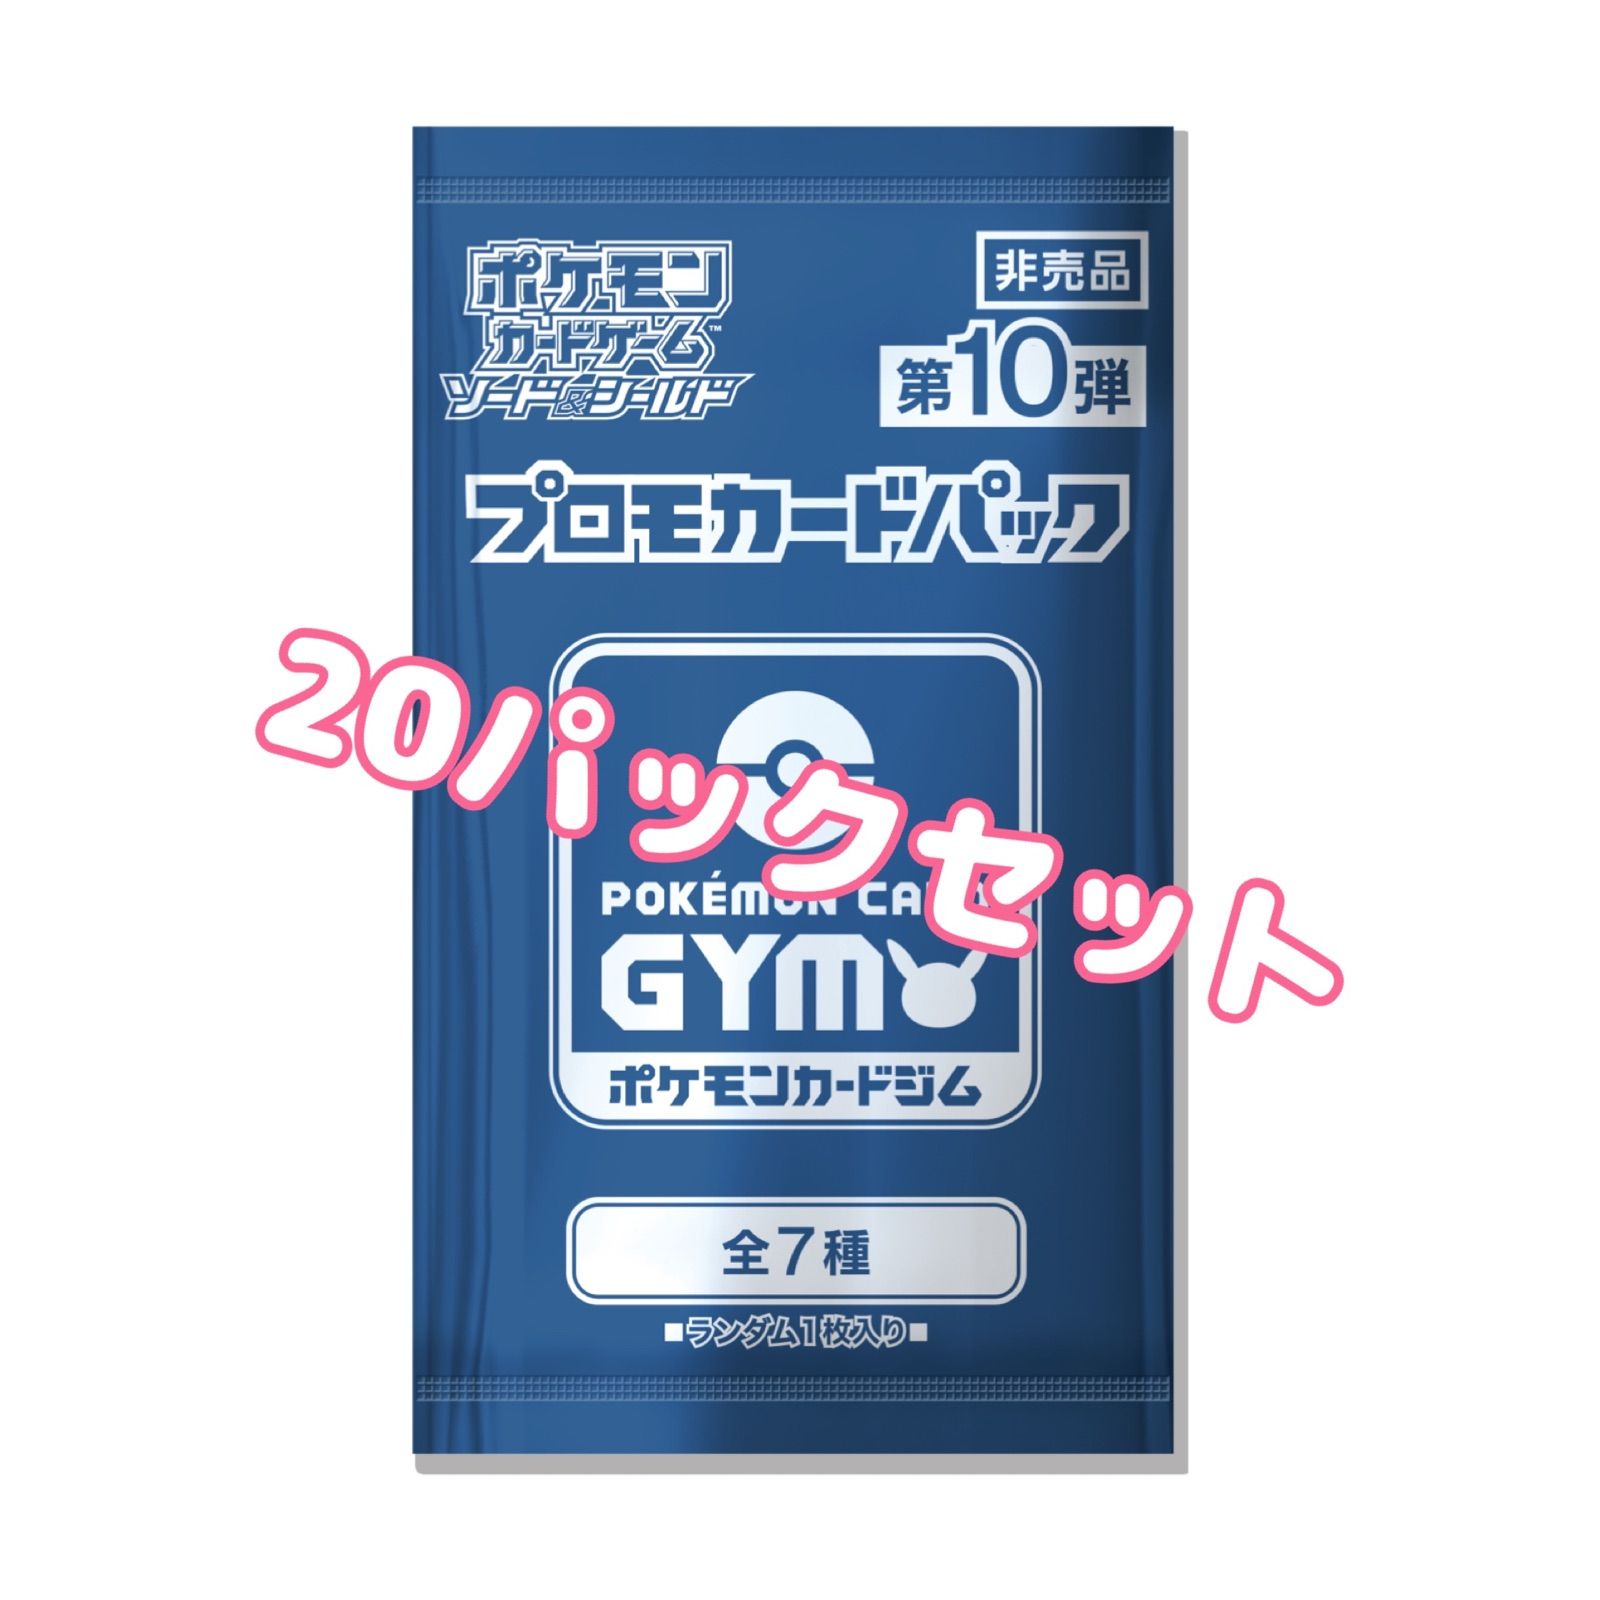 【151】ポケモンカードゲーム20パックセットクレイバースト